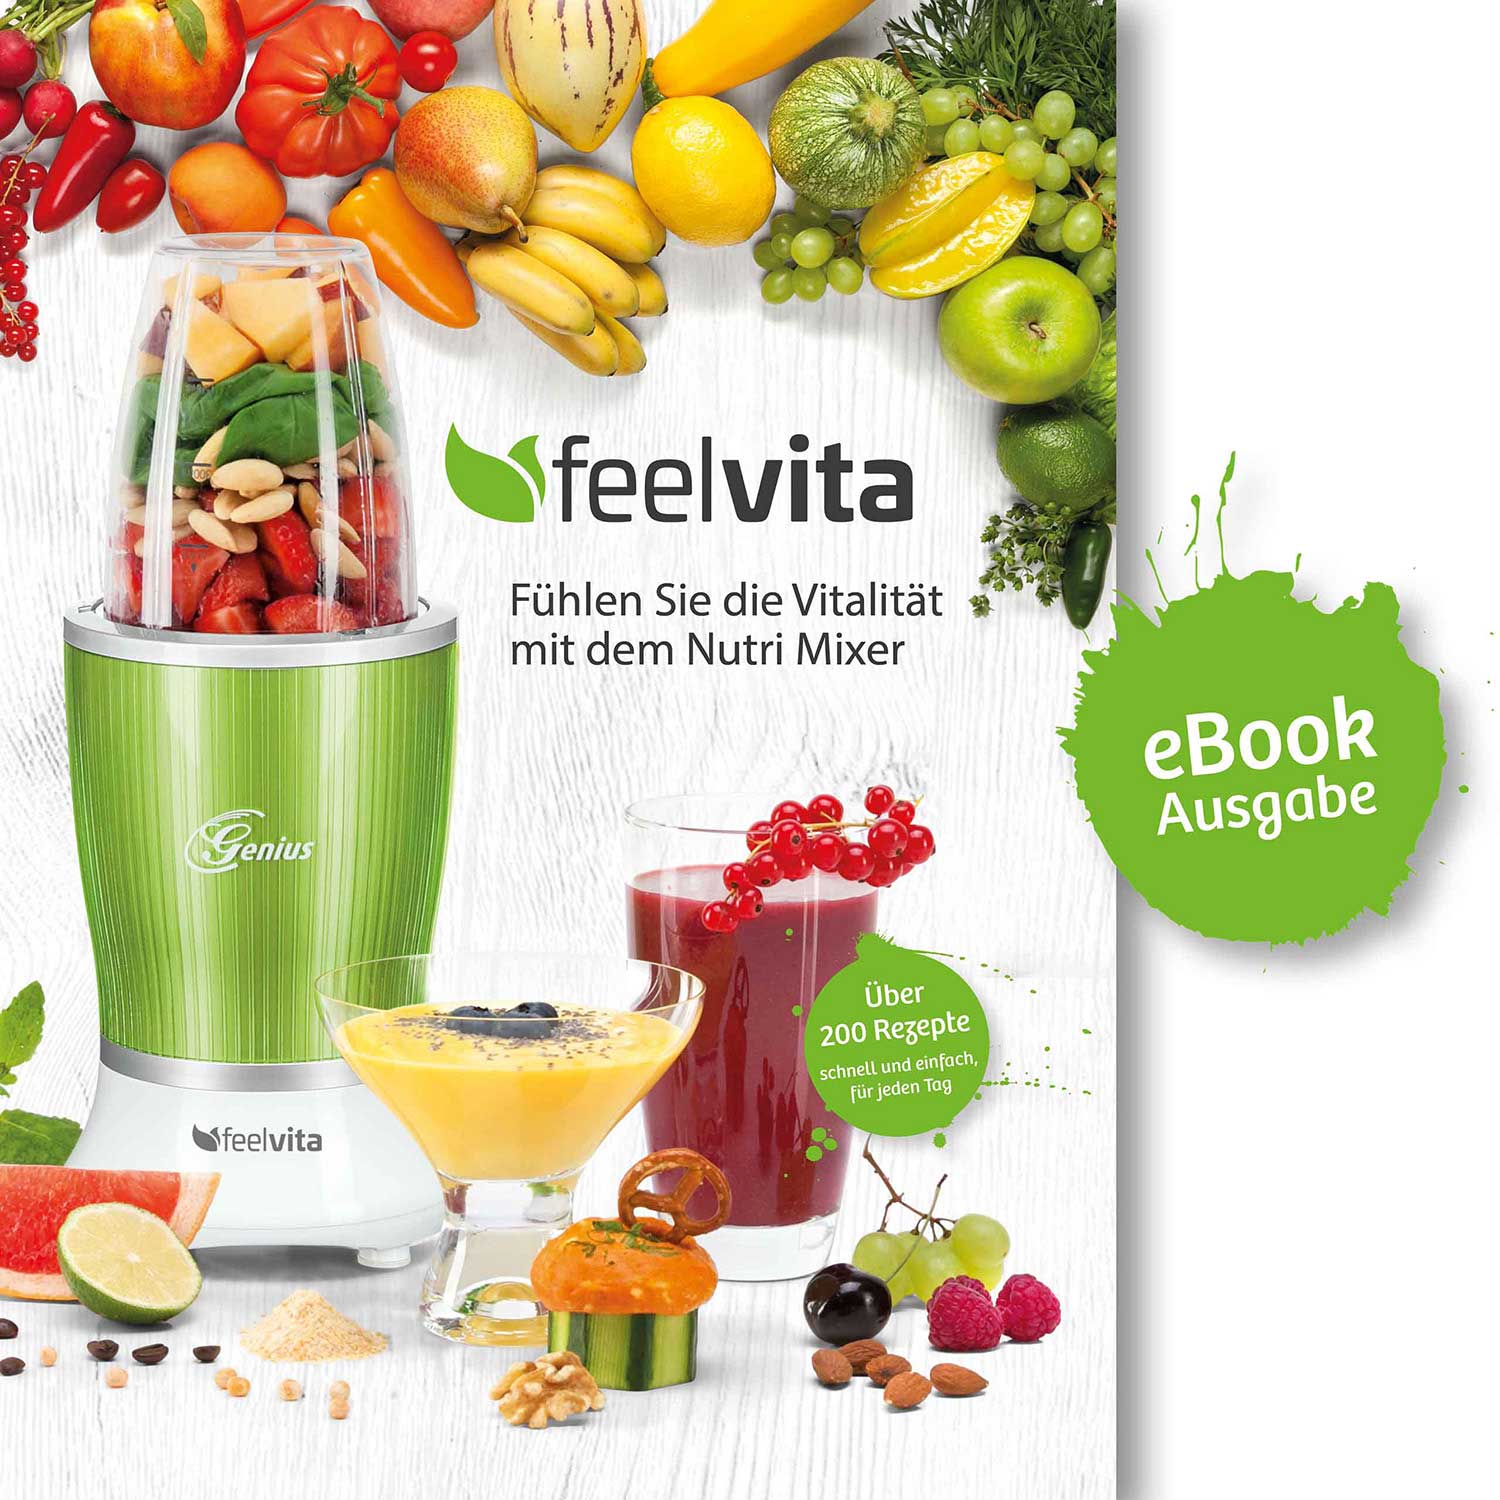 genius feelvita nutri mixer rezeptbuch (ebook)